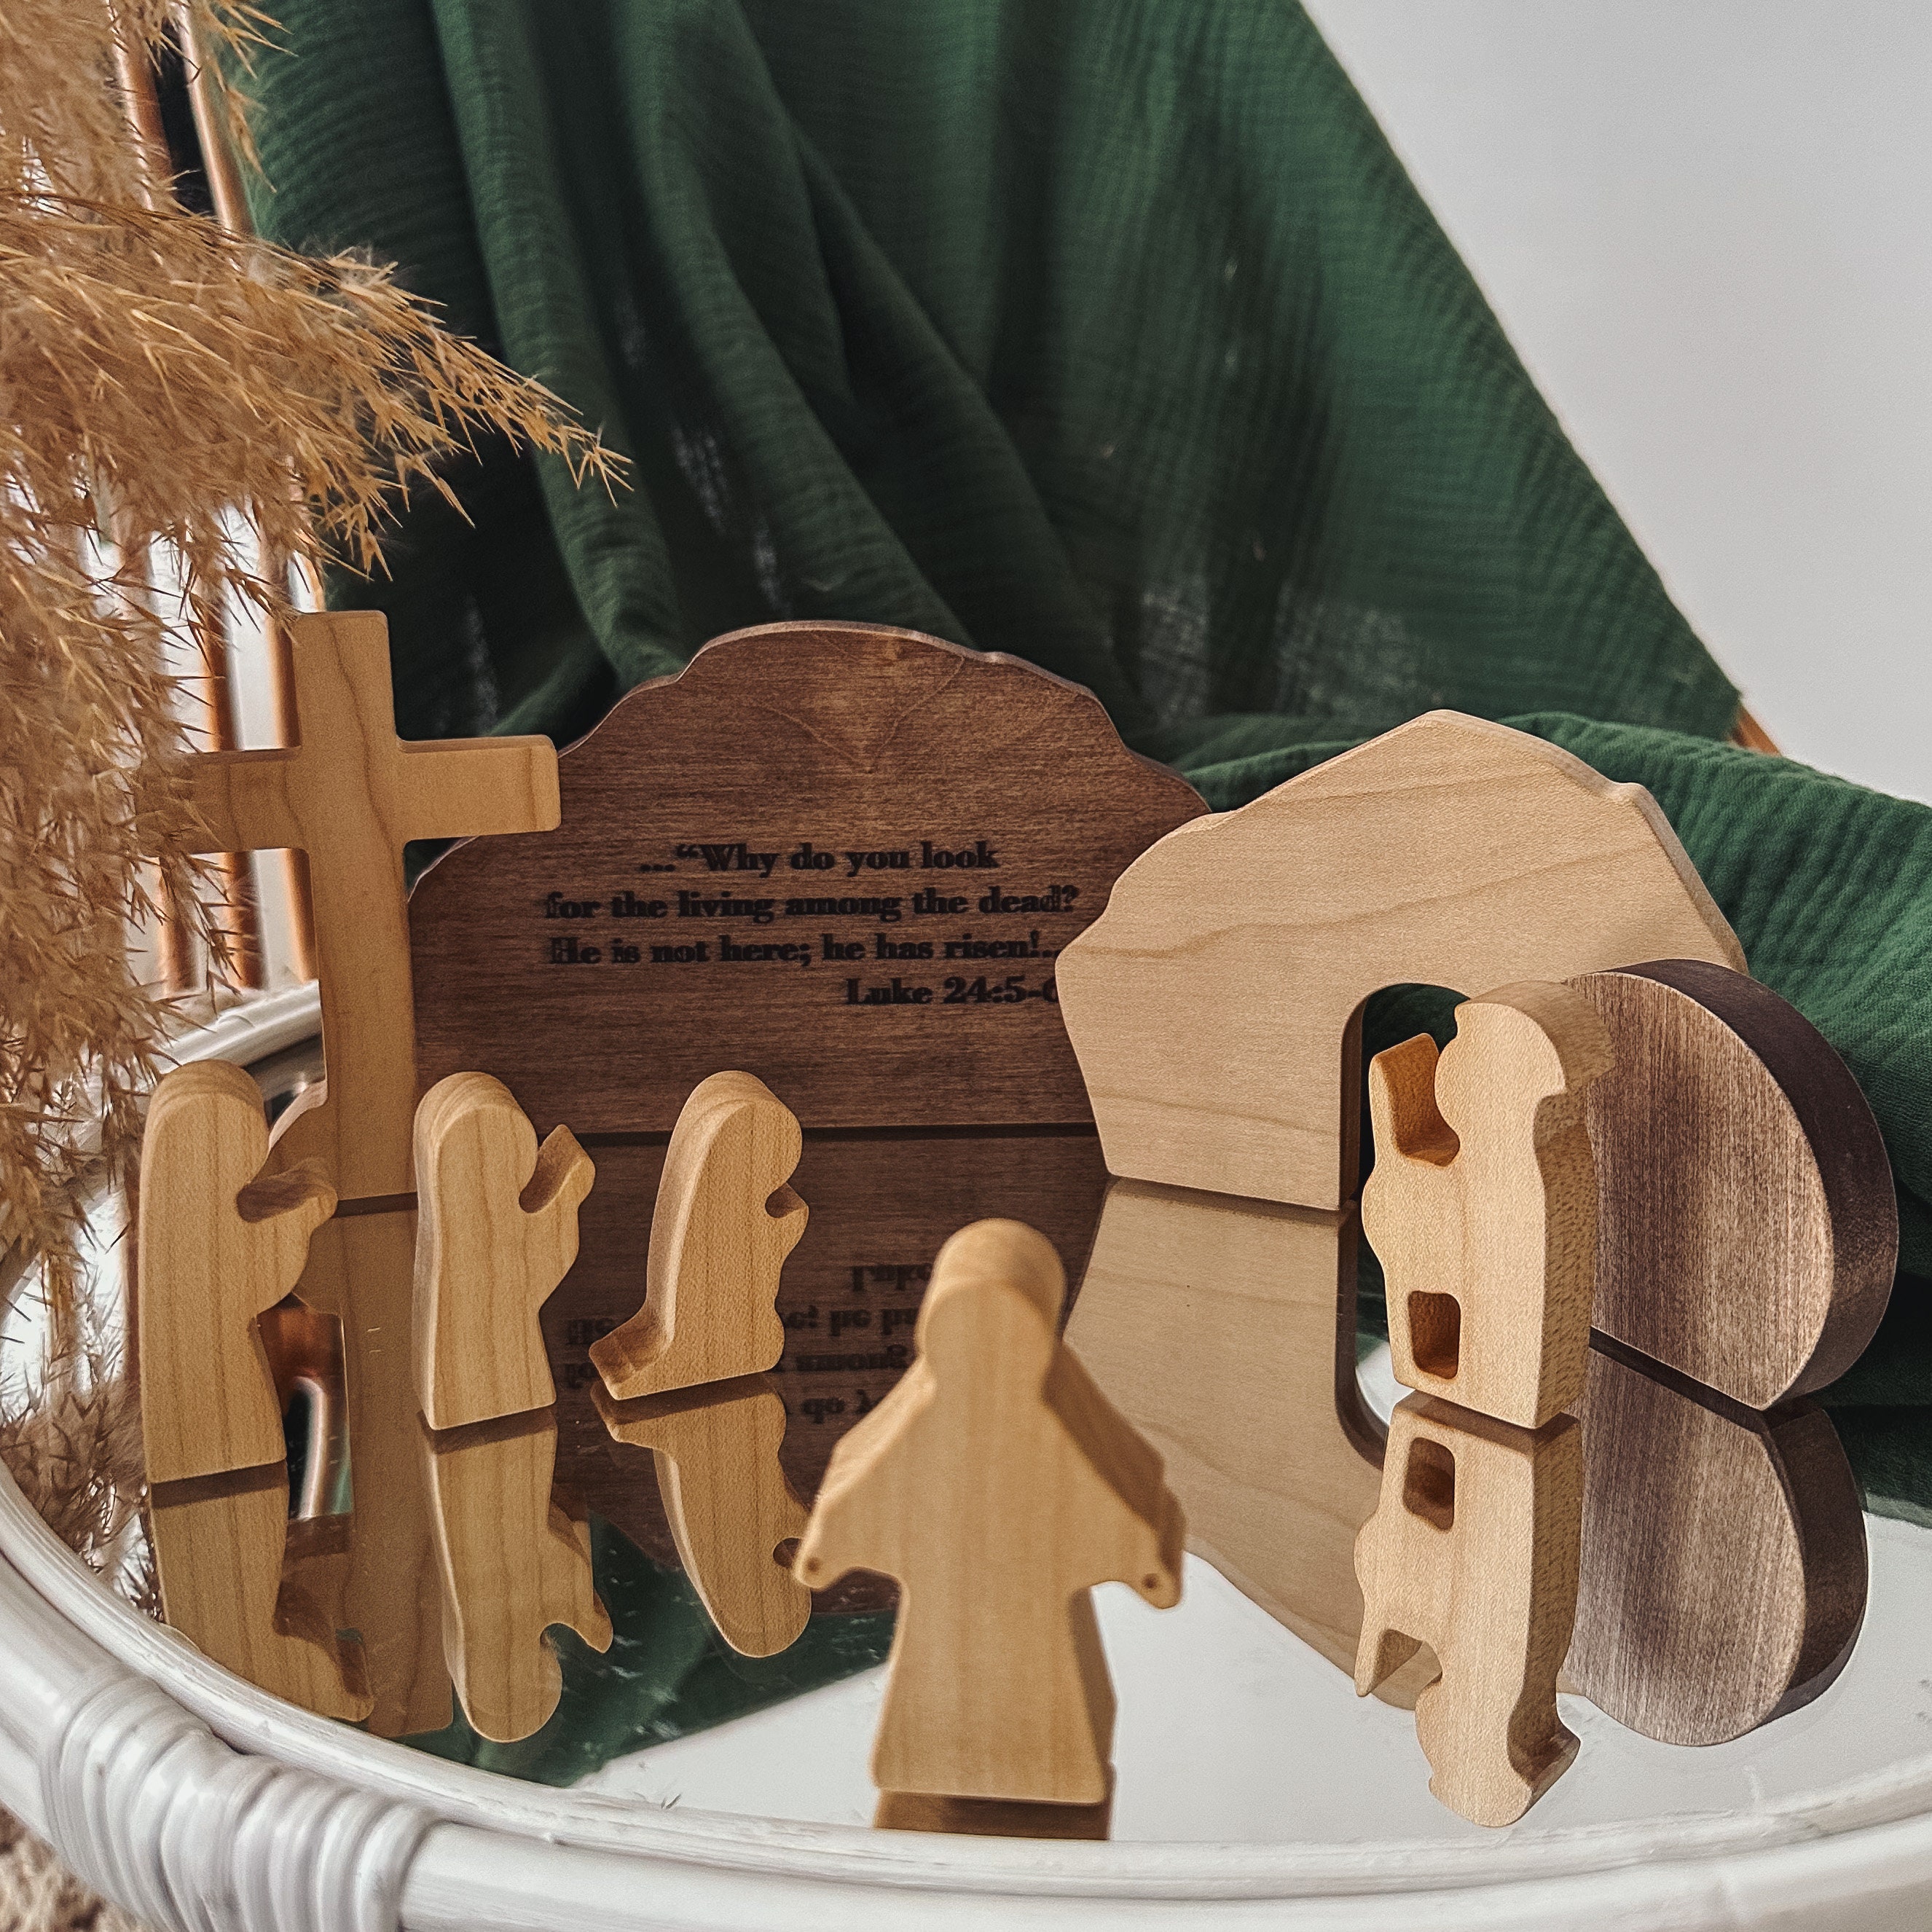 Puzzle Jouet Noël Maison en bois Holiday Village House Ralphies